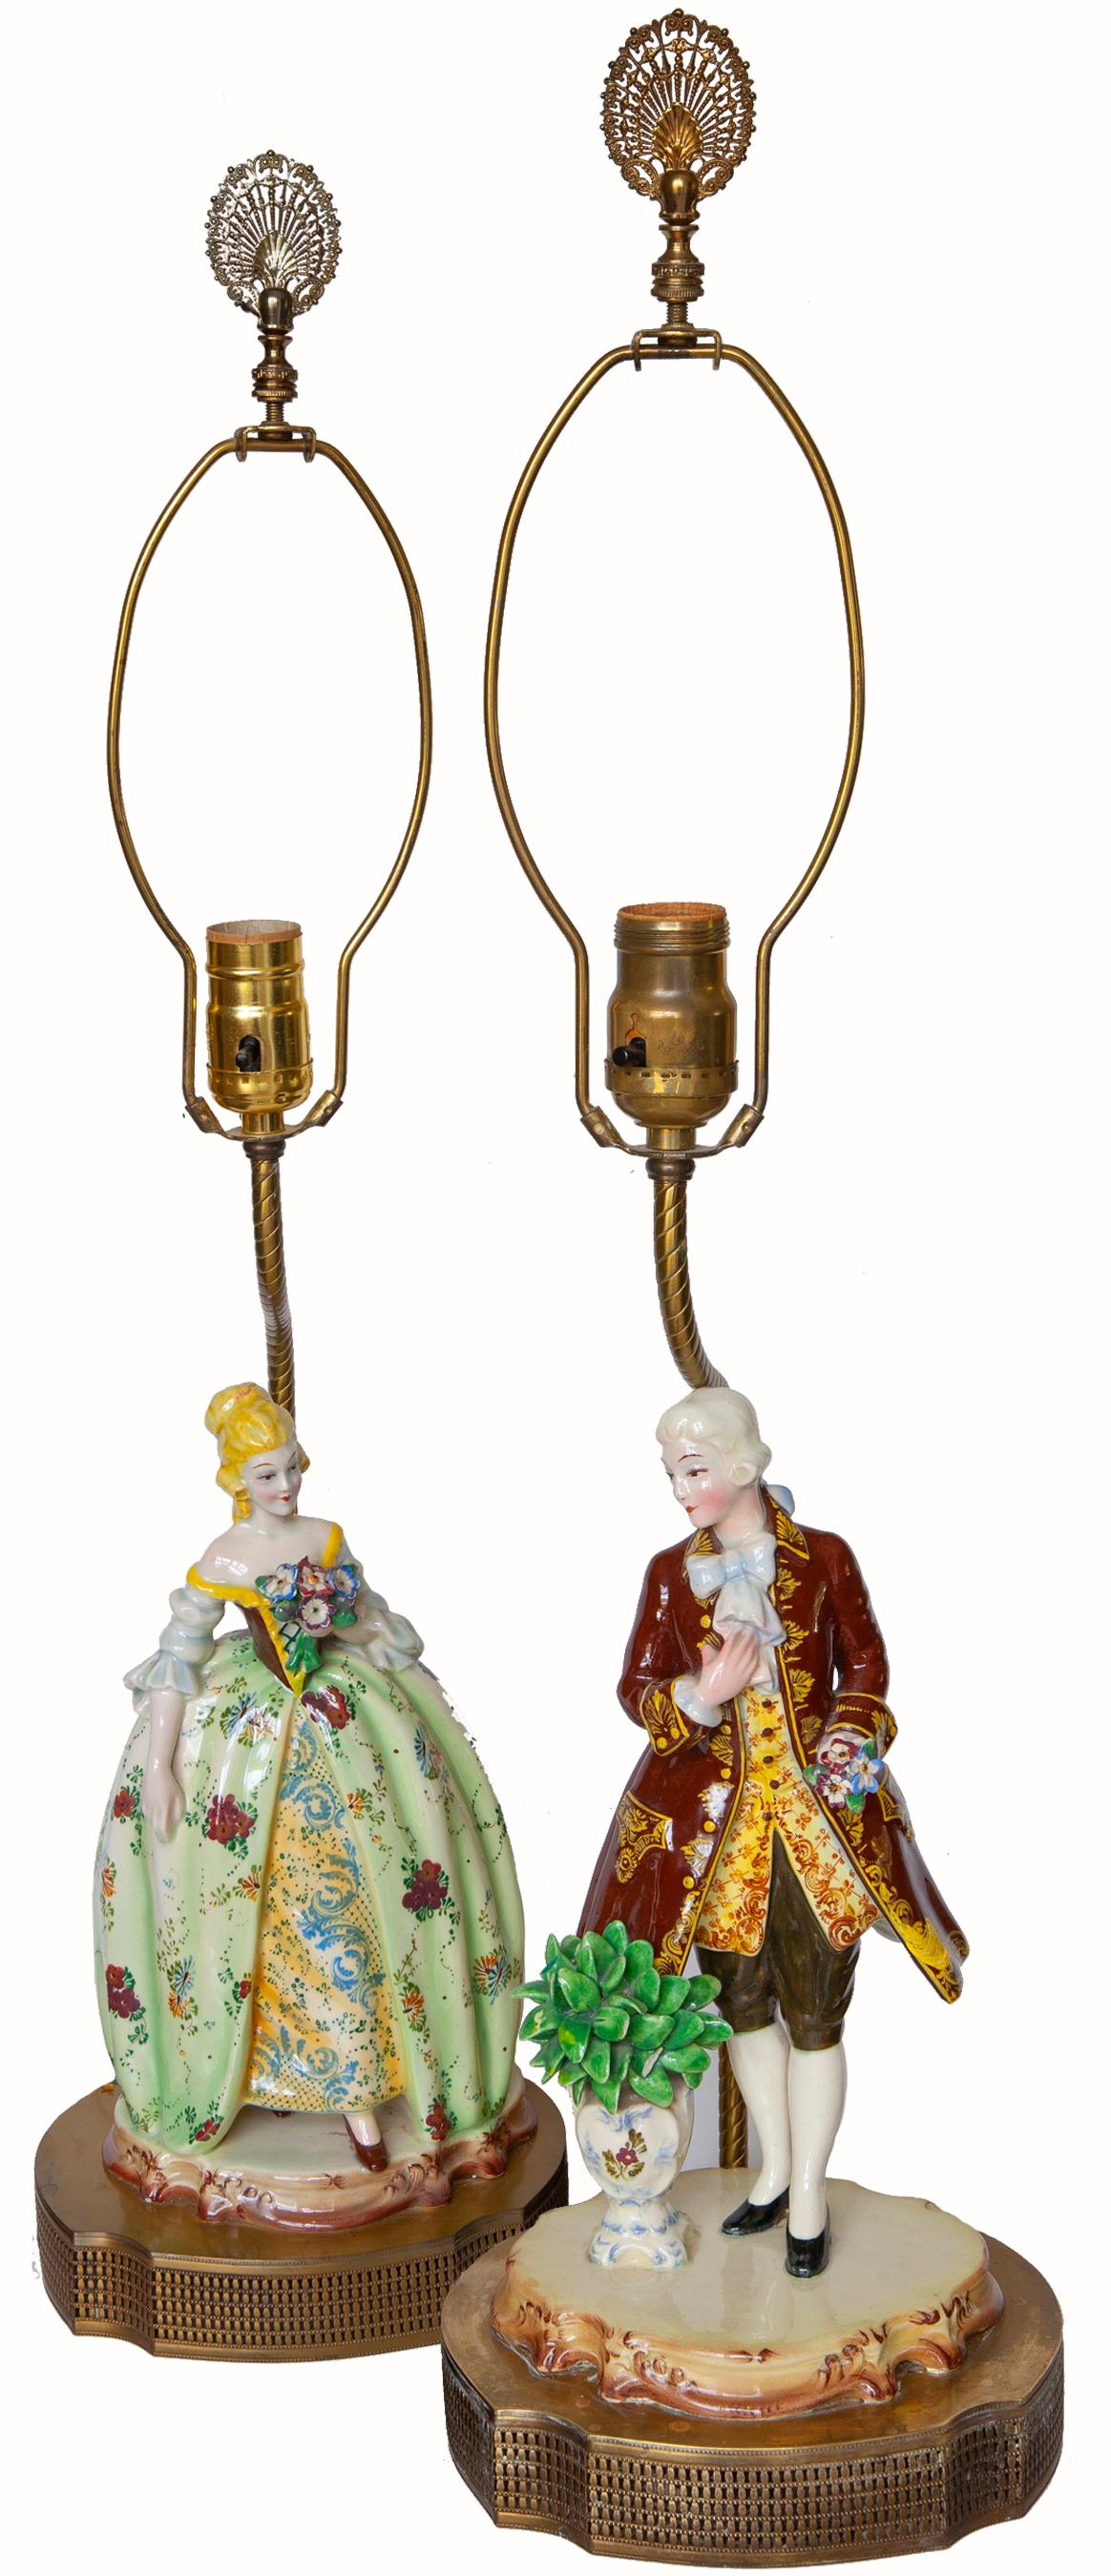 Die Porzellanfiguren der Romantischen Bewegung sind in klassischer deutscher Kleidung des späten Rokoko gehalten. Diese Figuren wurden um 1920-1930 auf durchbrochene Sockel mit Lampenbeschlägen montiert. Original-Finials und goldene